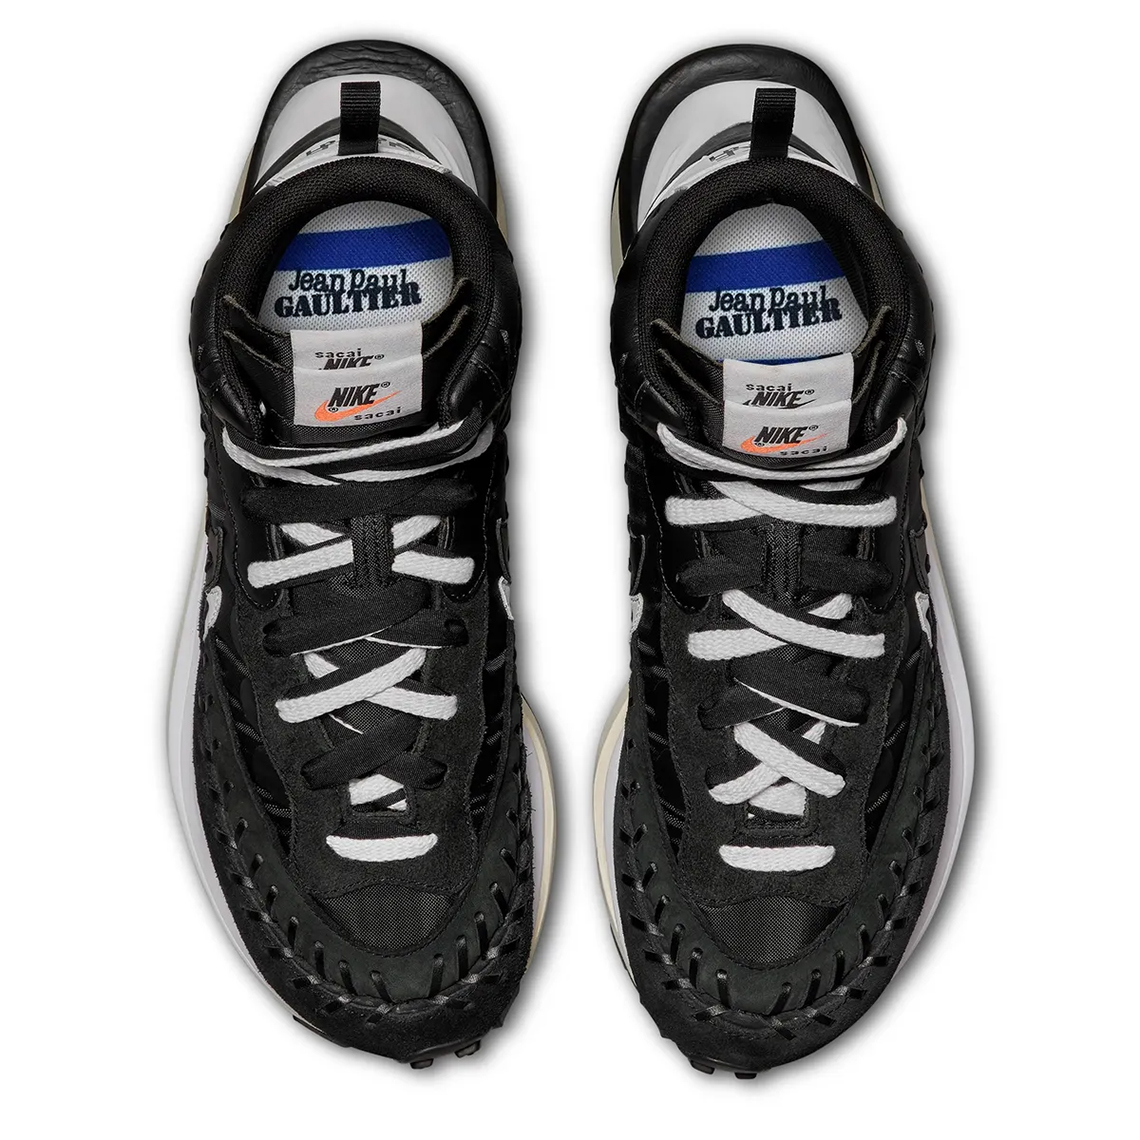 Jean Paul Gaultier Sacai Nike Ldvaporwaffle Black White Dh9186 001 3